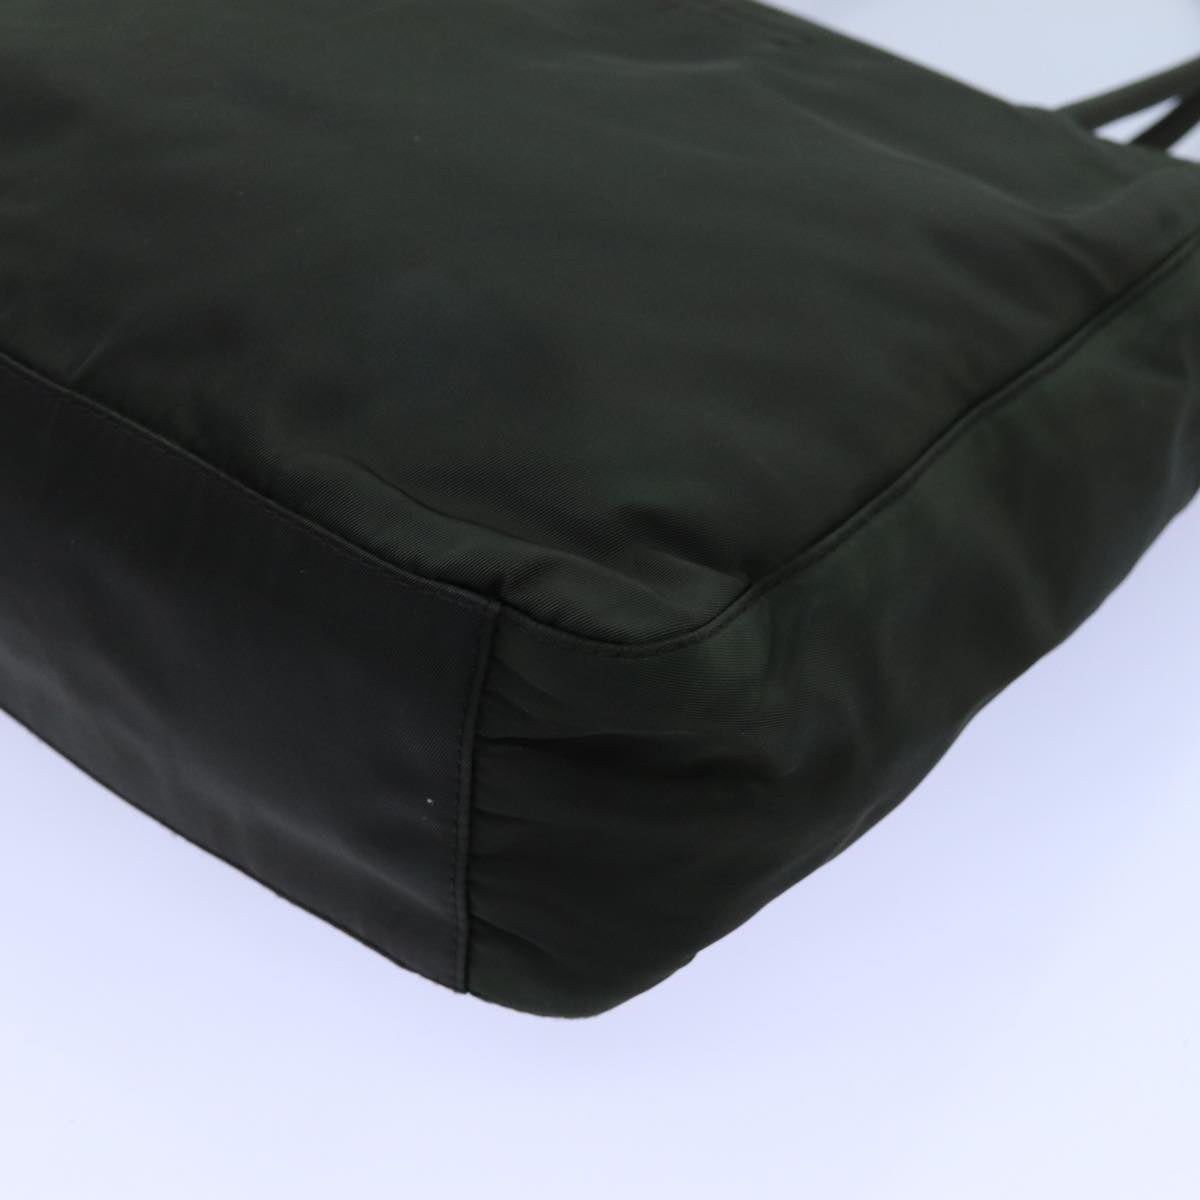 PRADA Hand Bag Nylon Khaki Auth 72784